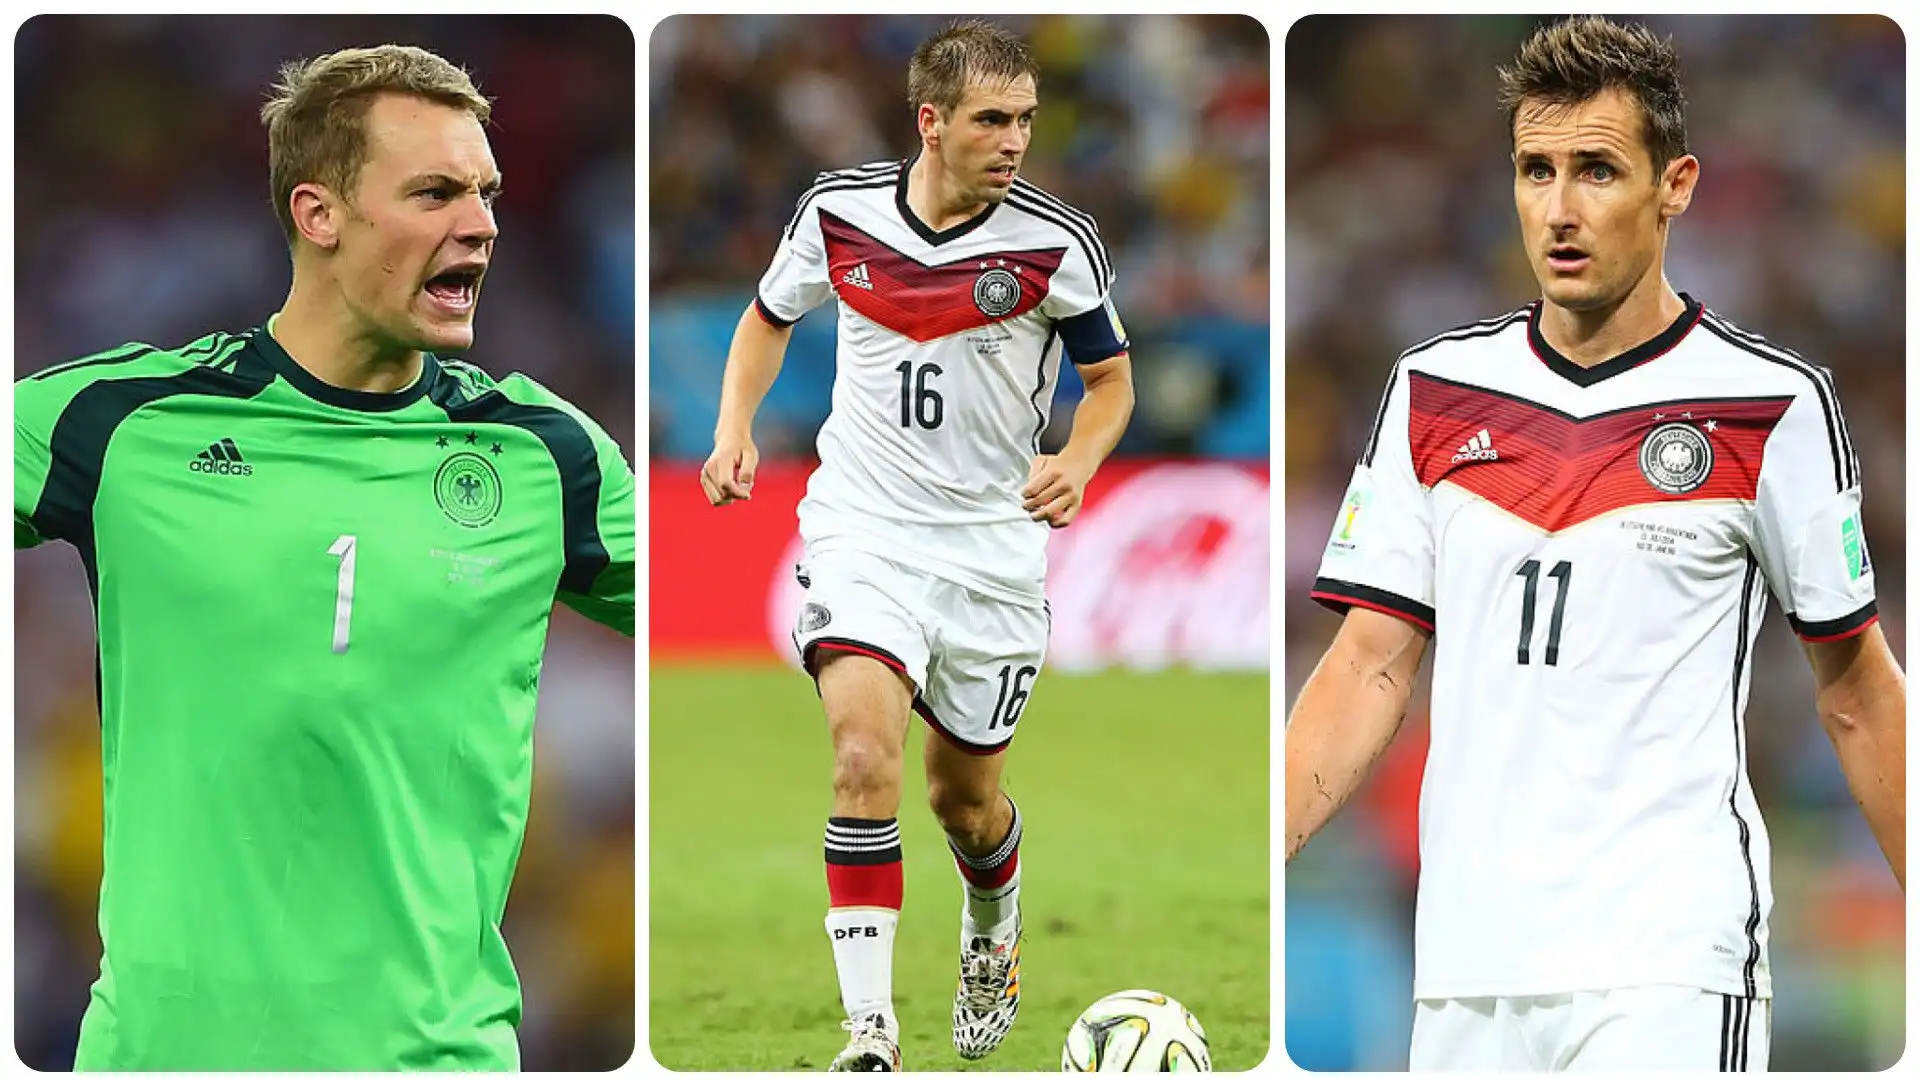 Germania: cosa fanno oggi i campioni del Mondiale 2014? Foto. Nell'elenco sono compresi gli undici calciatori che hanno giocato da titolari nella finale vinta ai supplementari contro l'Argentina